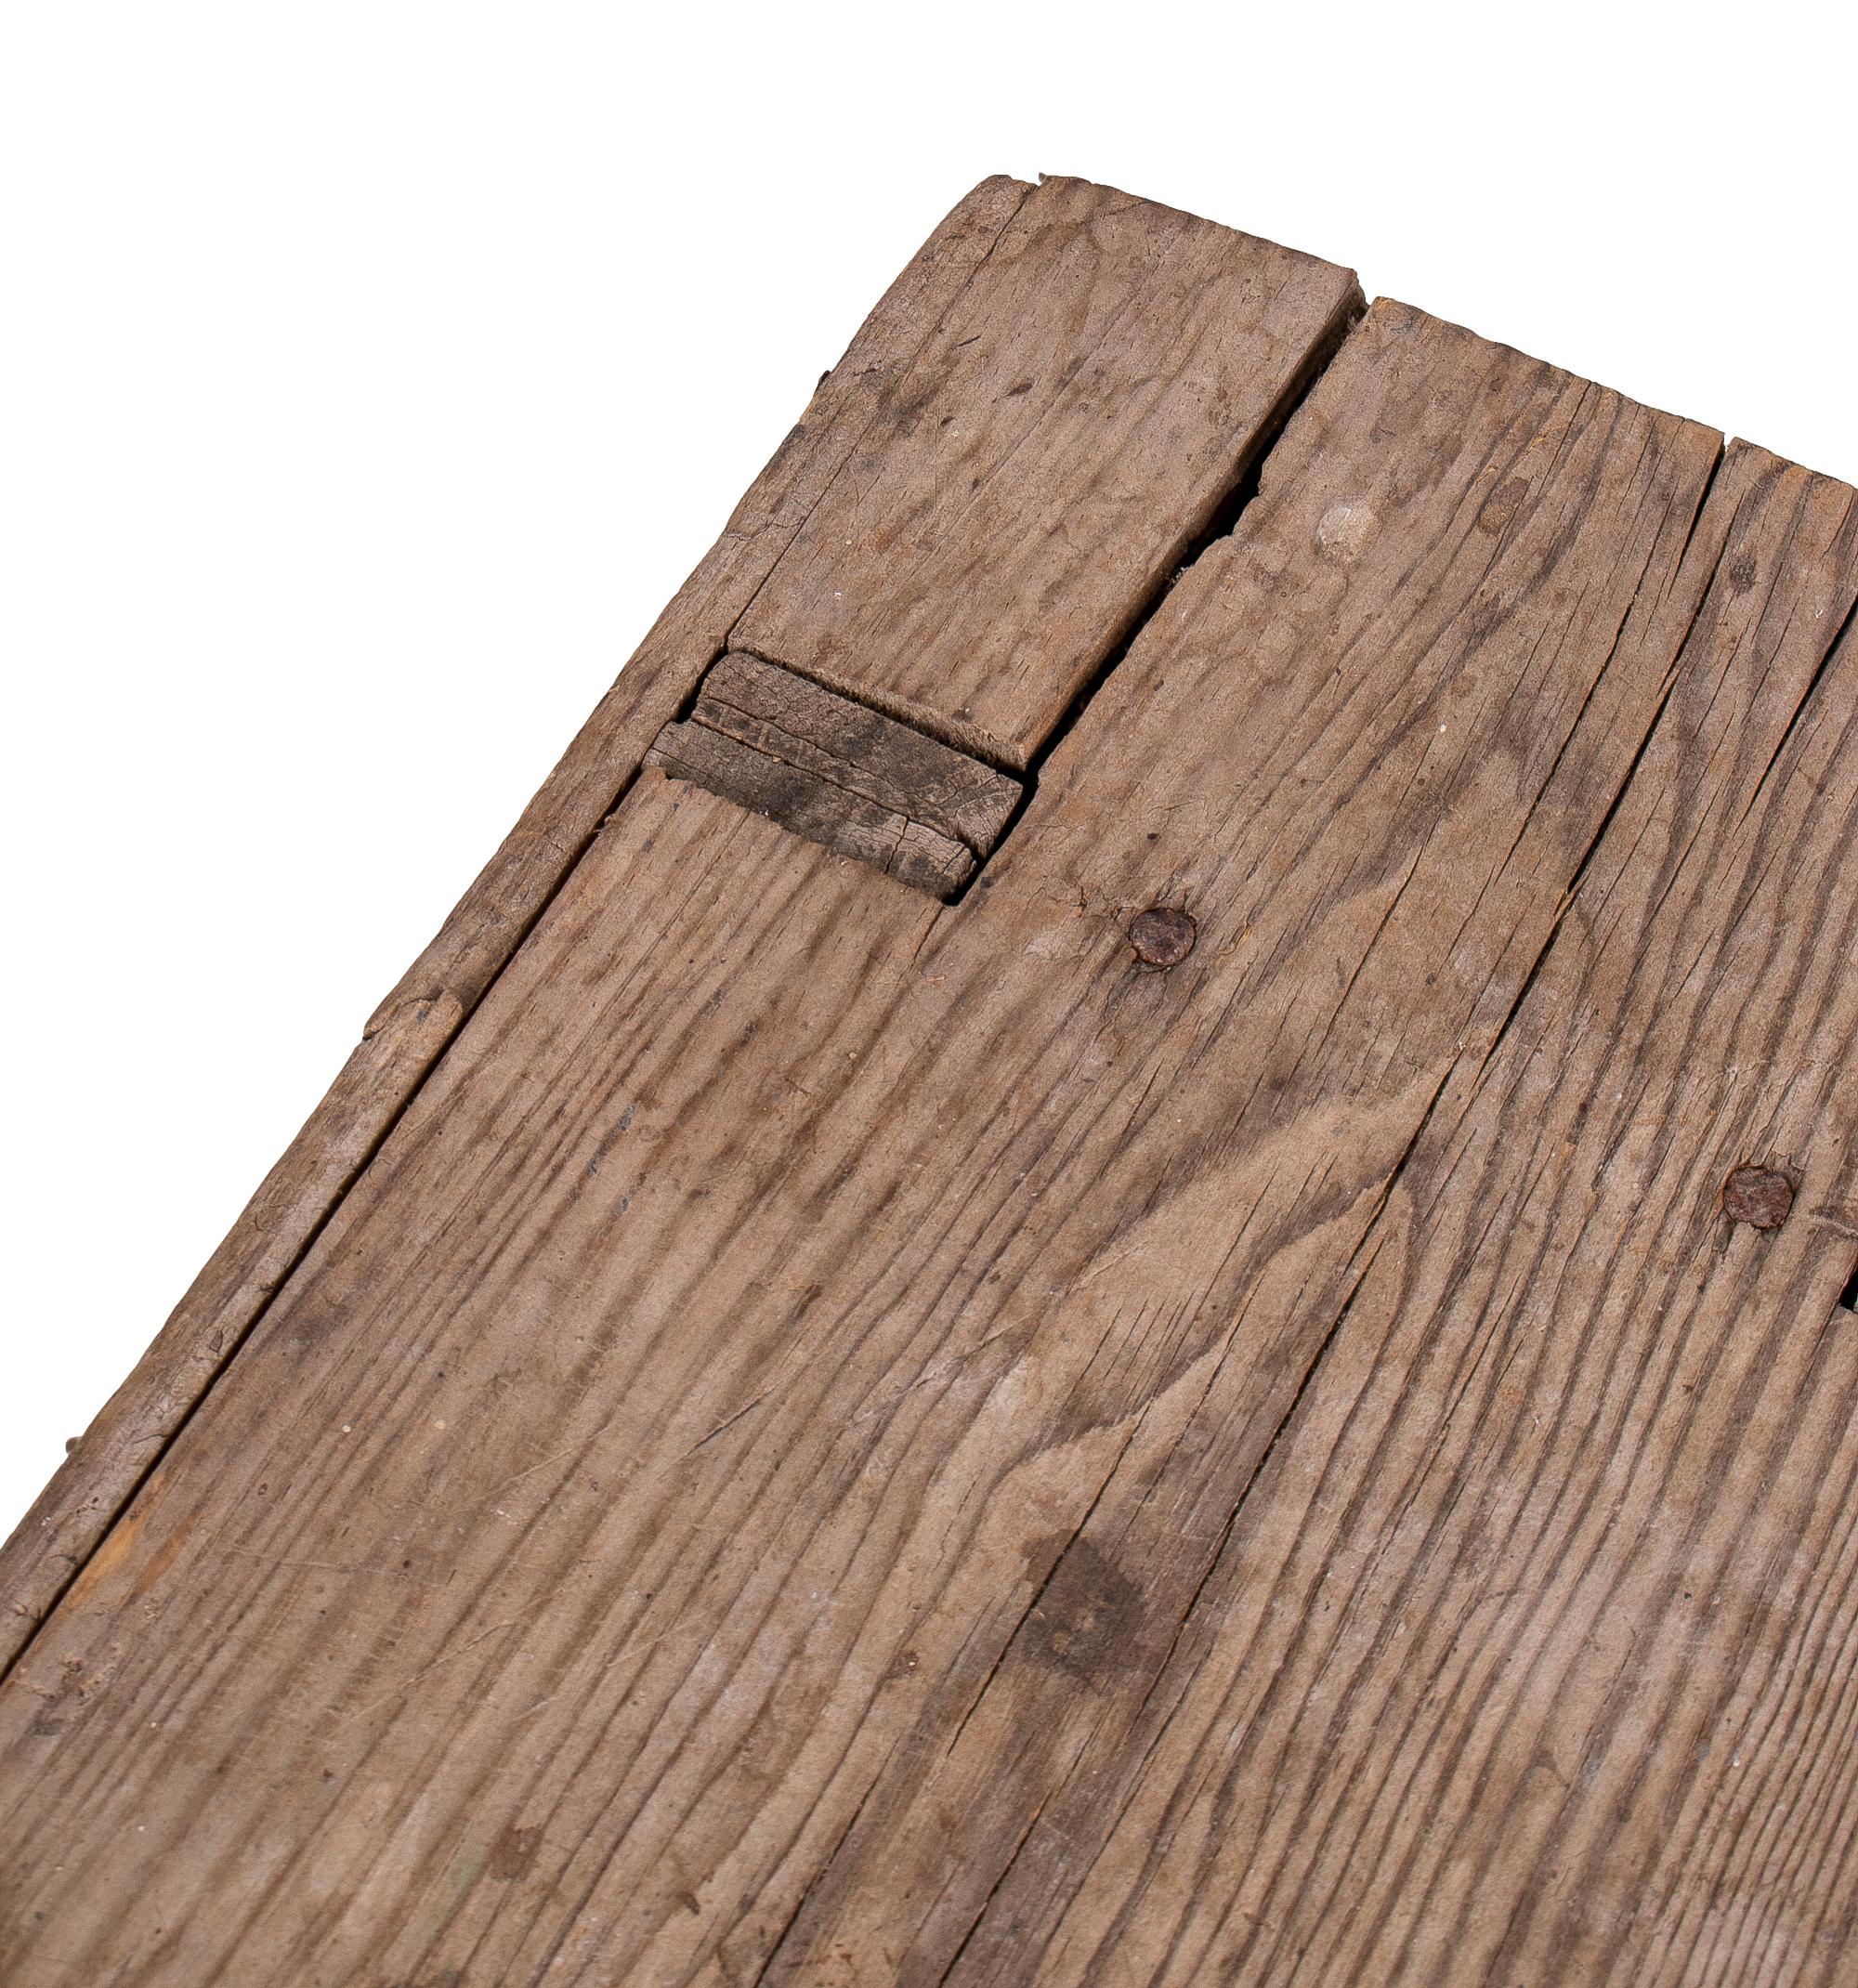 18th Century Spanish Handmade Wooden Bench 2